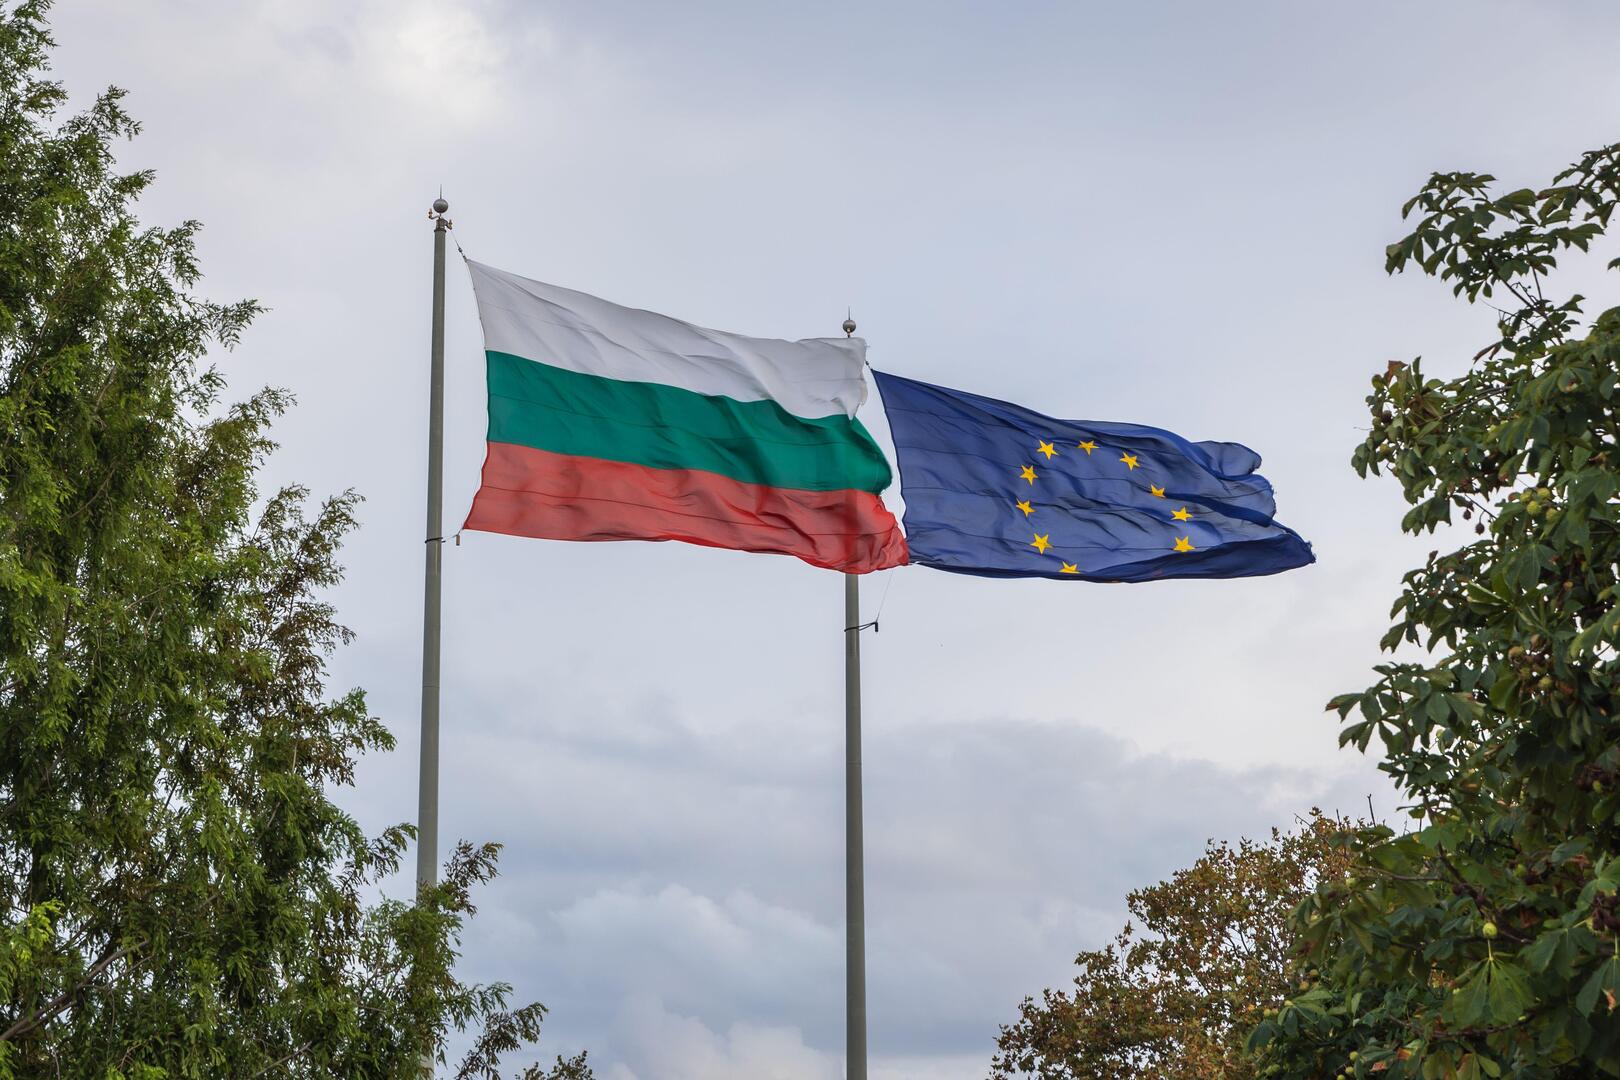 المفوضية الأوروبية تخصص 600 مليون يورو لبلغاريا لتعزيز الحدود مع تركيا